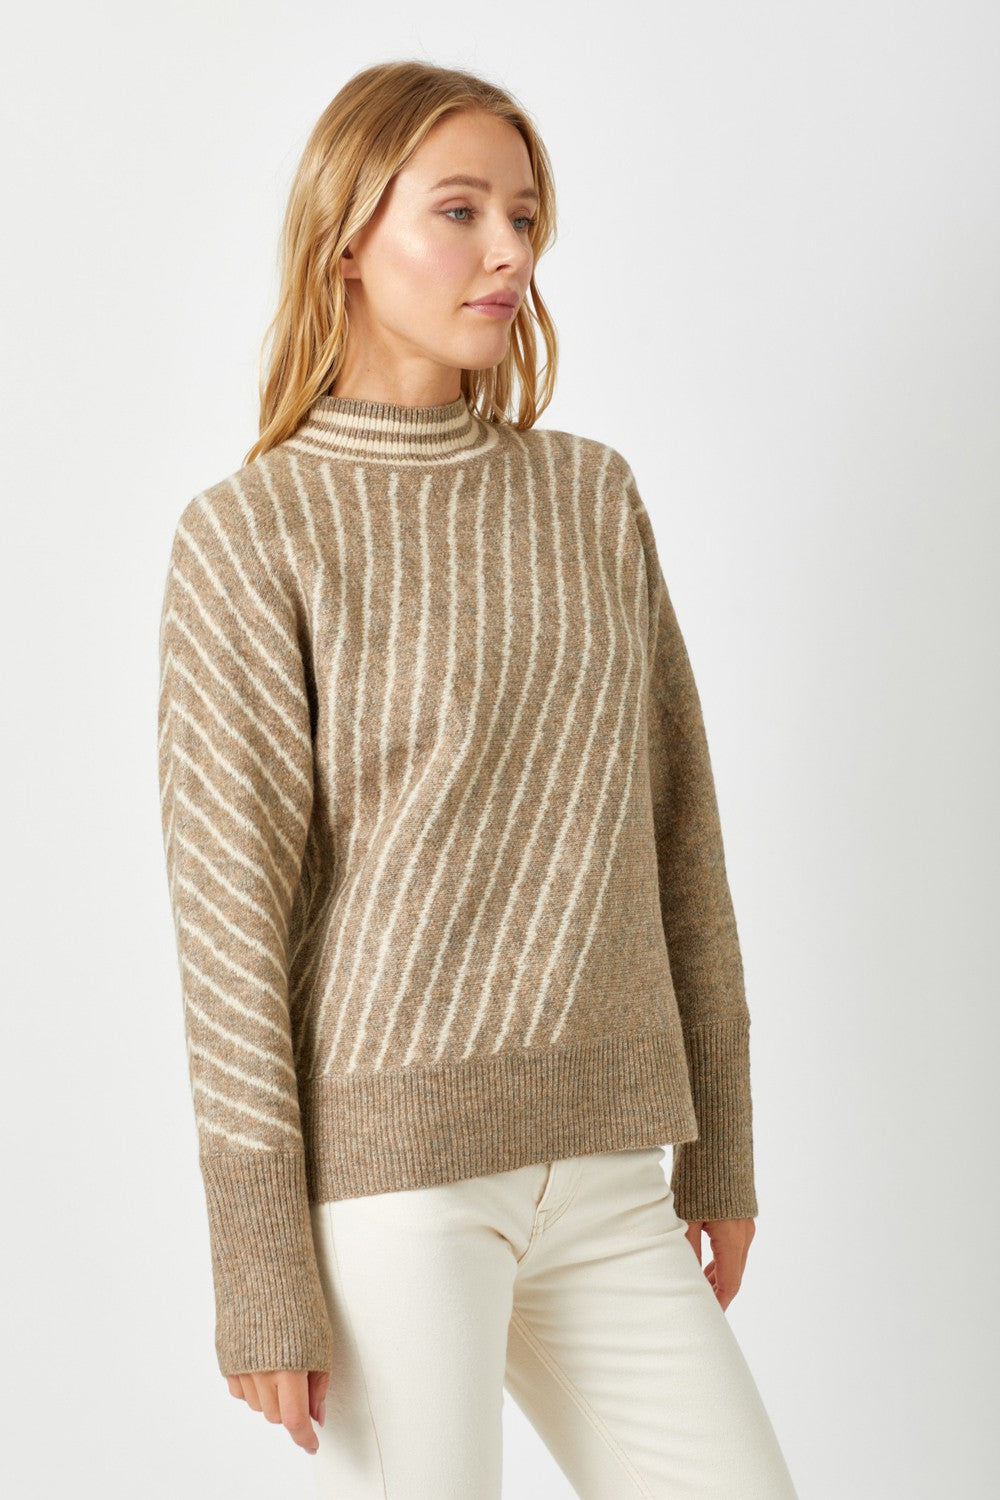 Latte Cream Striped Sweater